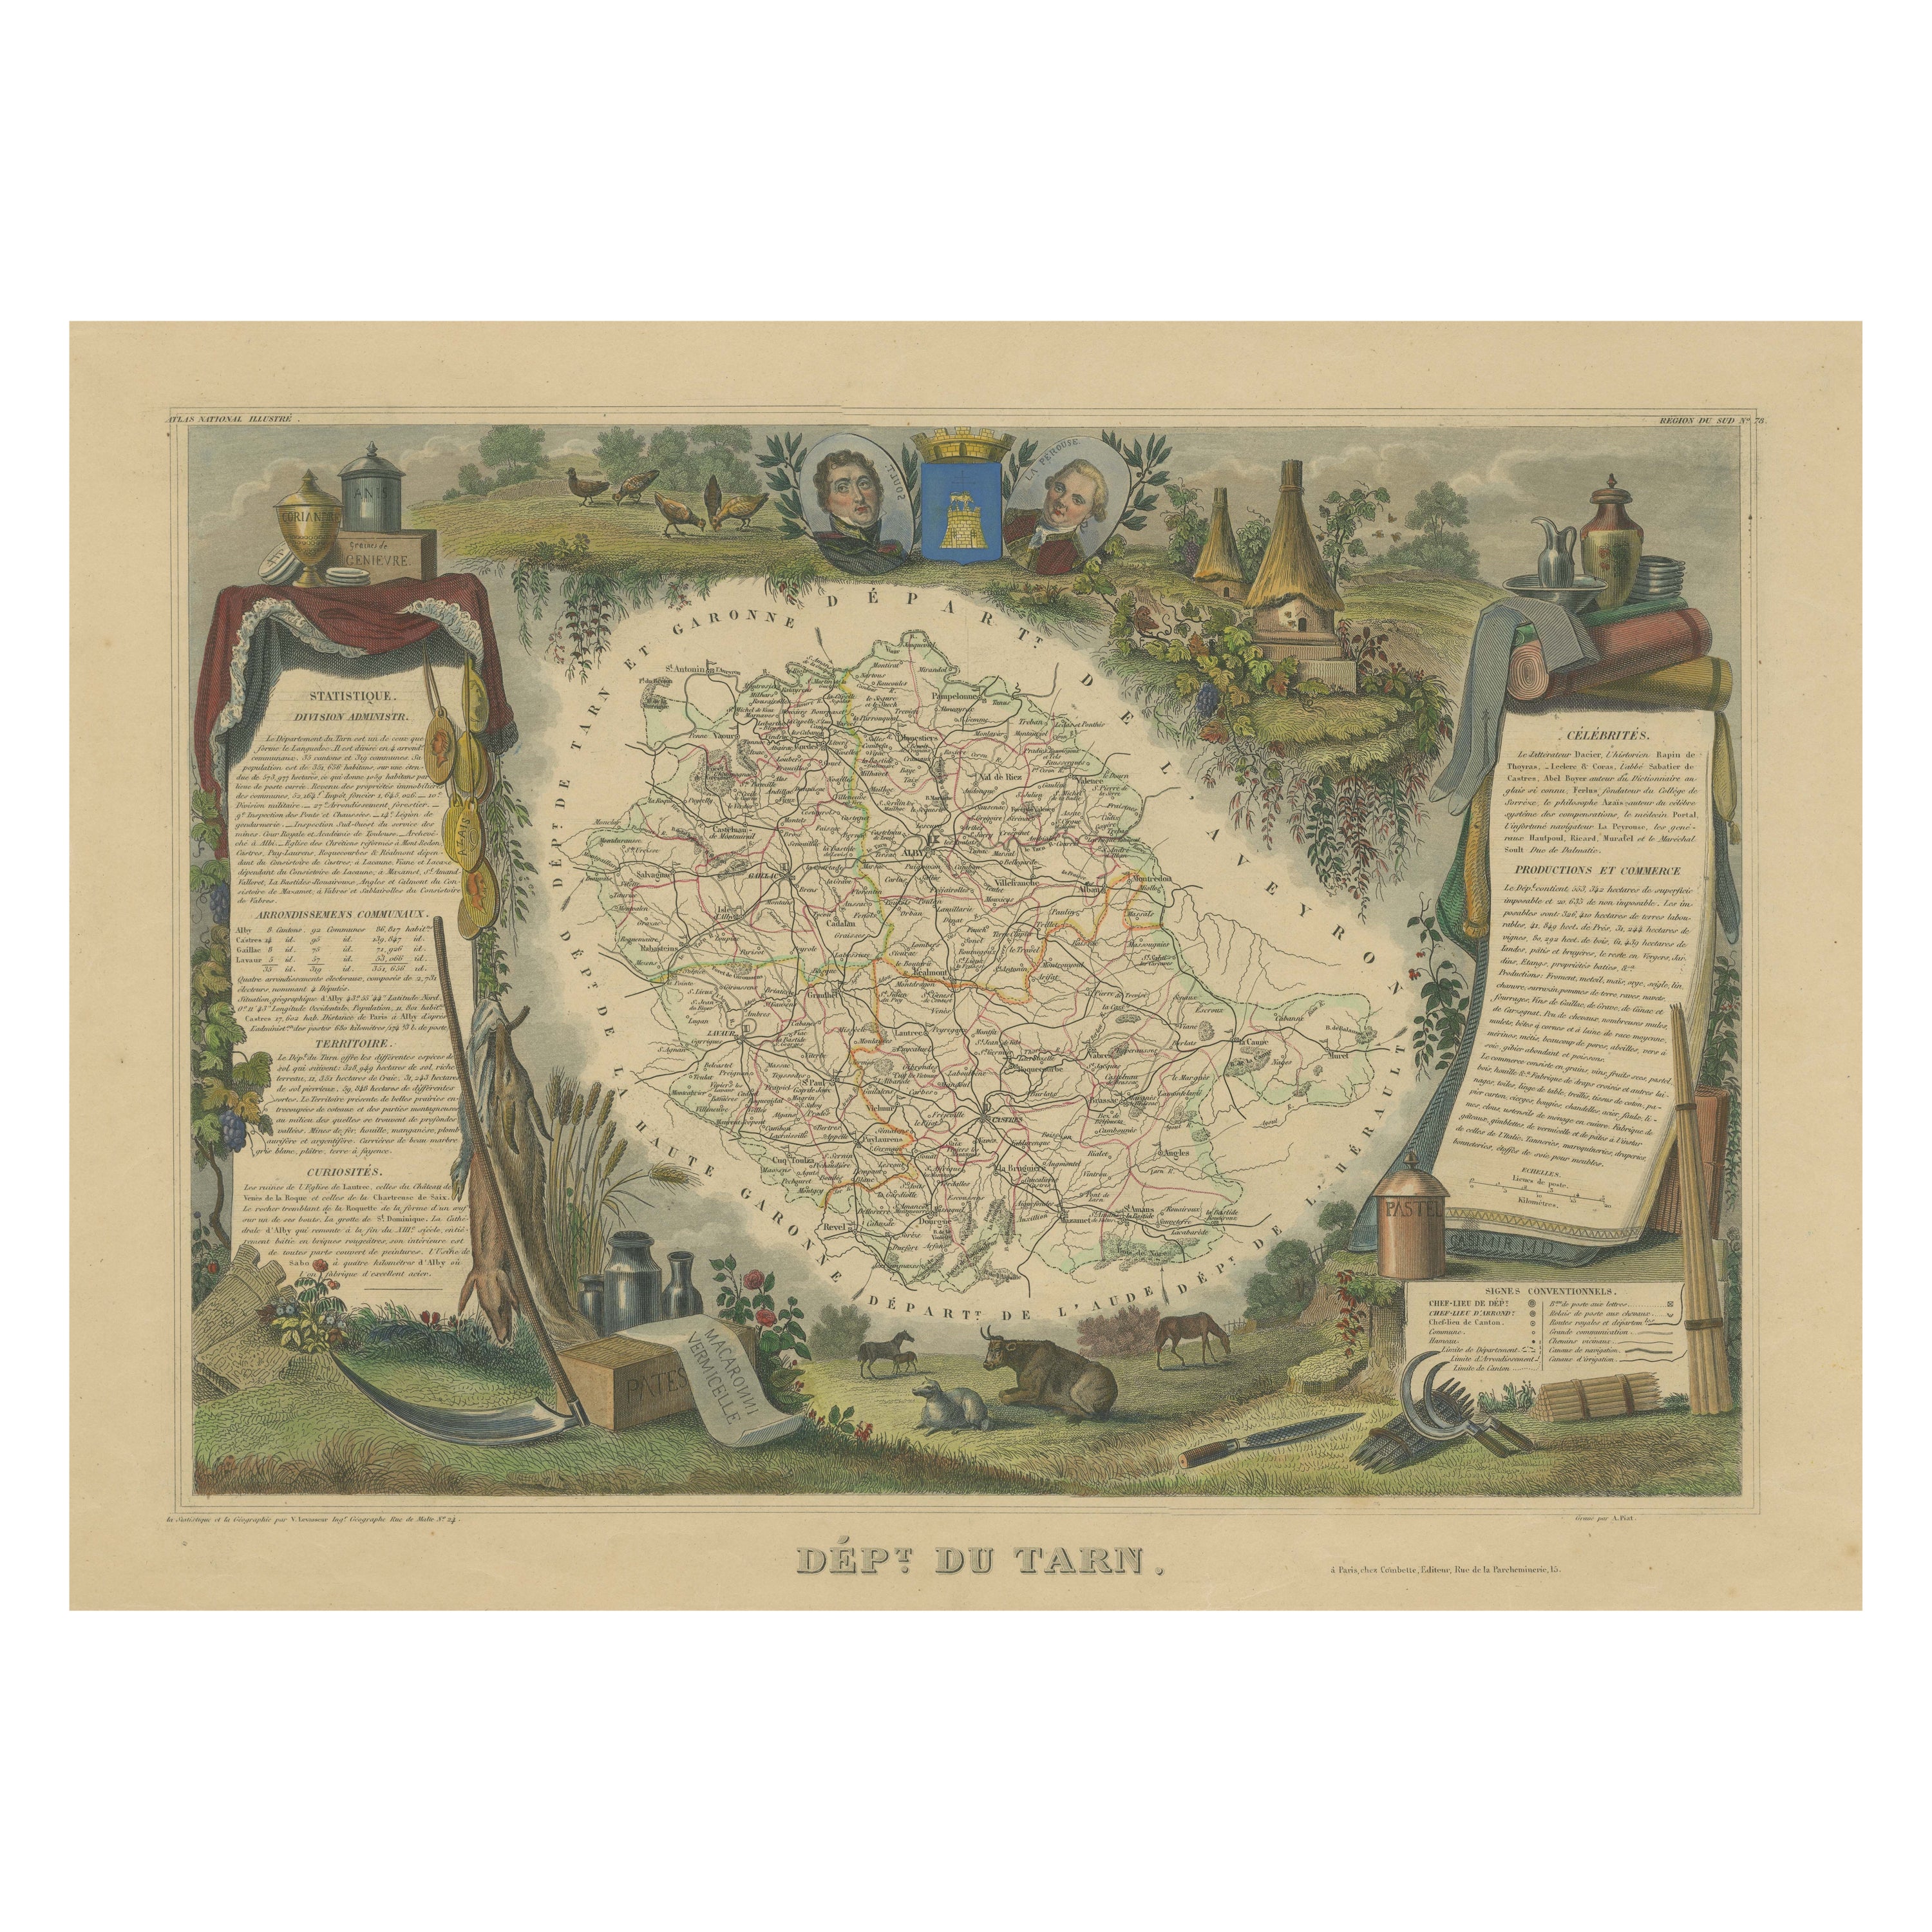 Handkolorierte antike Karte des Departements Tarn, Frankreich, um 1852